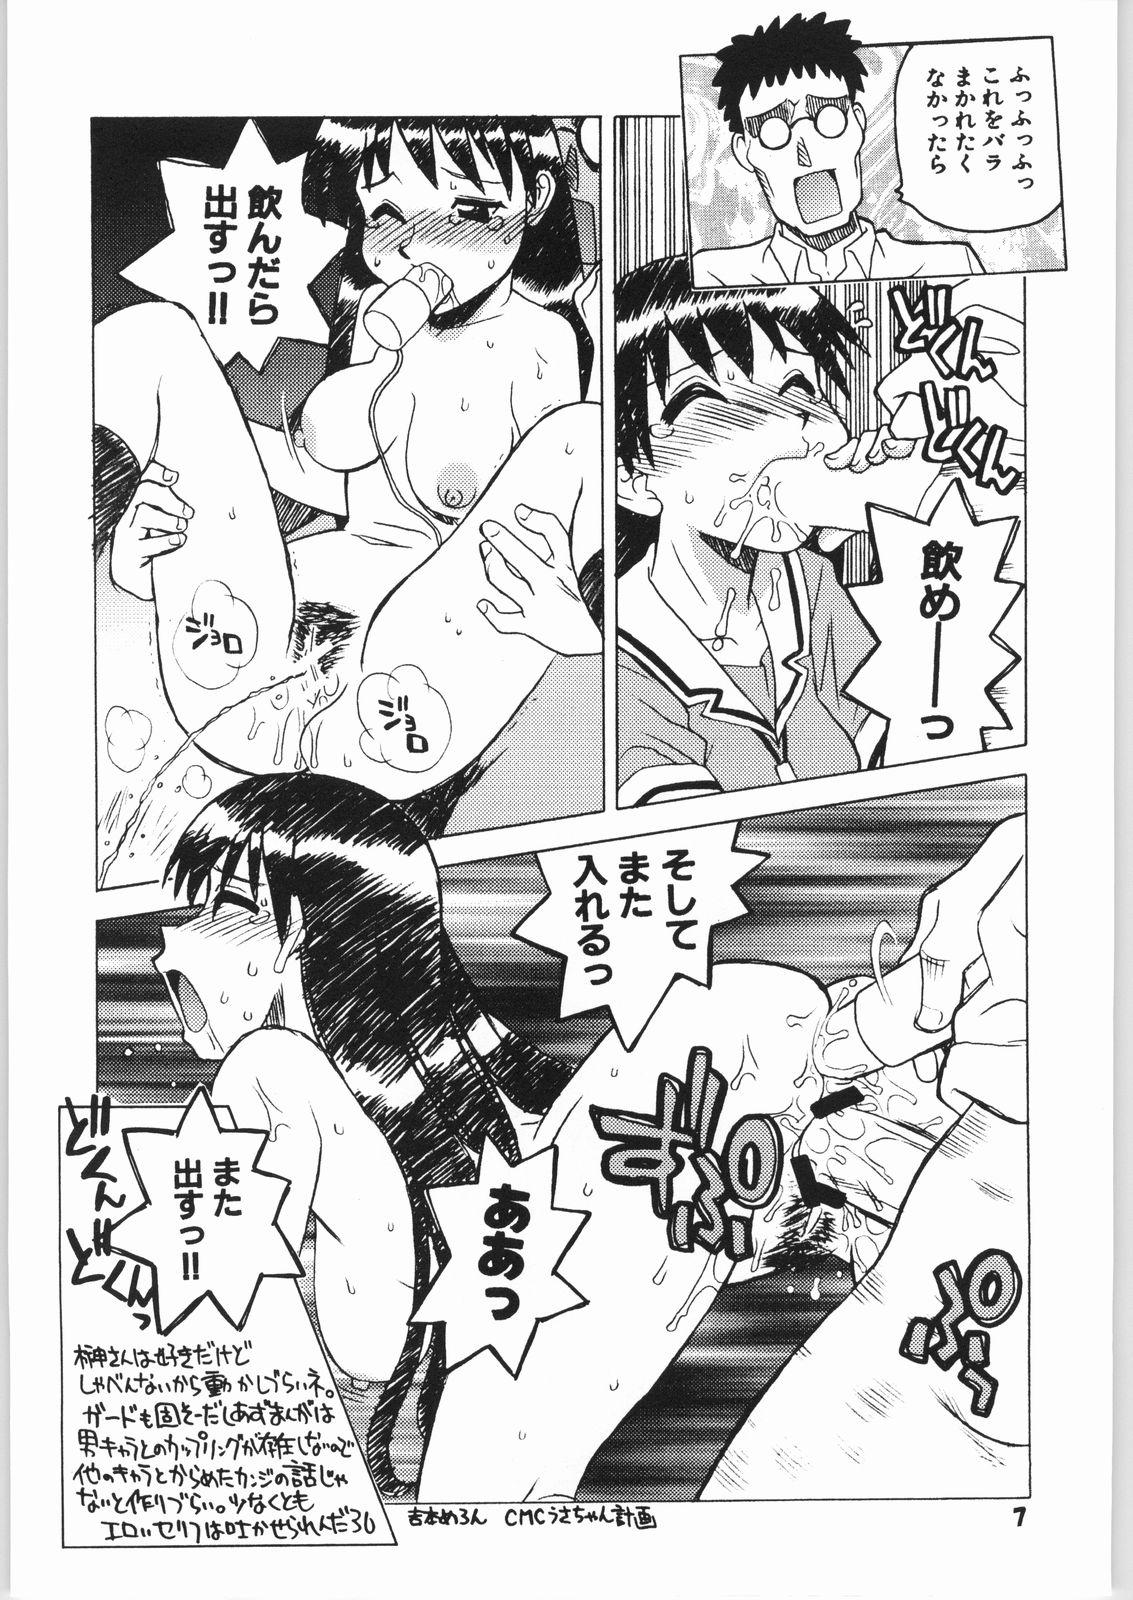 Fun Osakamanpaku R.O. - Azumanga daioh Couples - Page 6